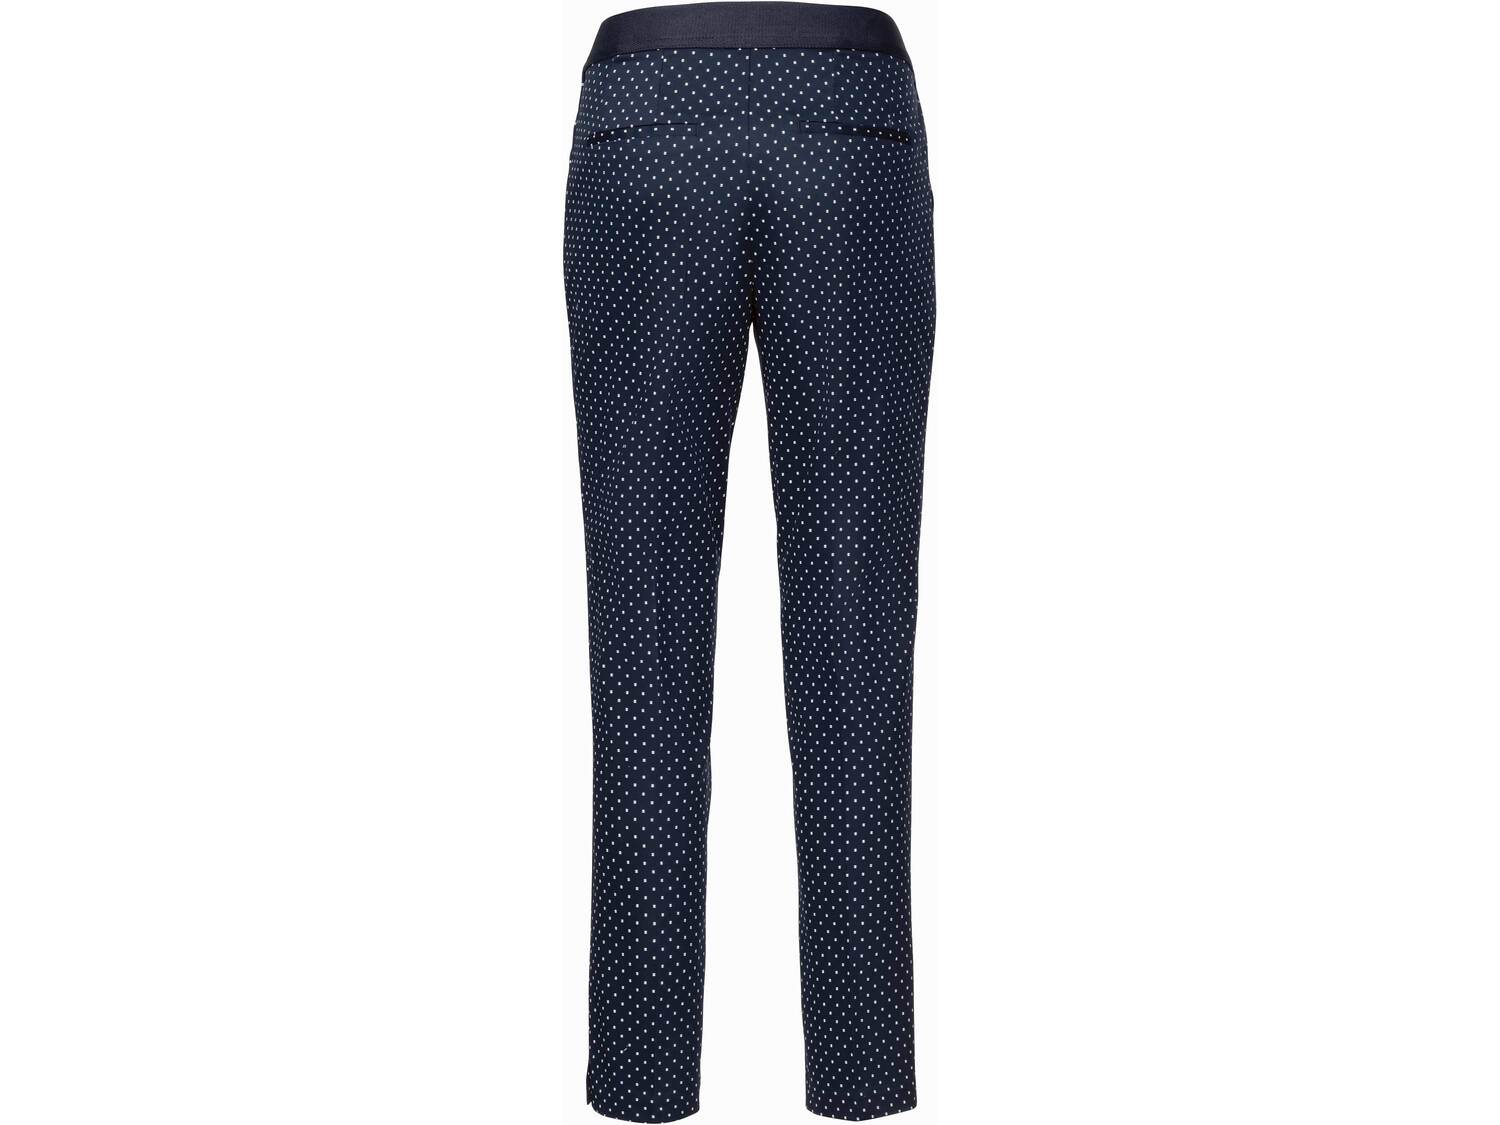 Spodnie damskie z bawełną Esmara, cena 44,99 PLN 
- rozmiary: 34-44
- z elastyczną ...